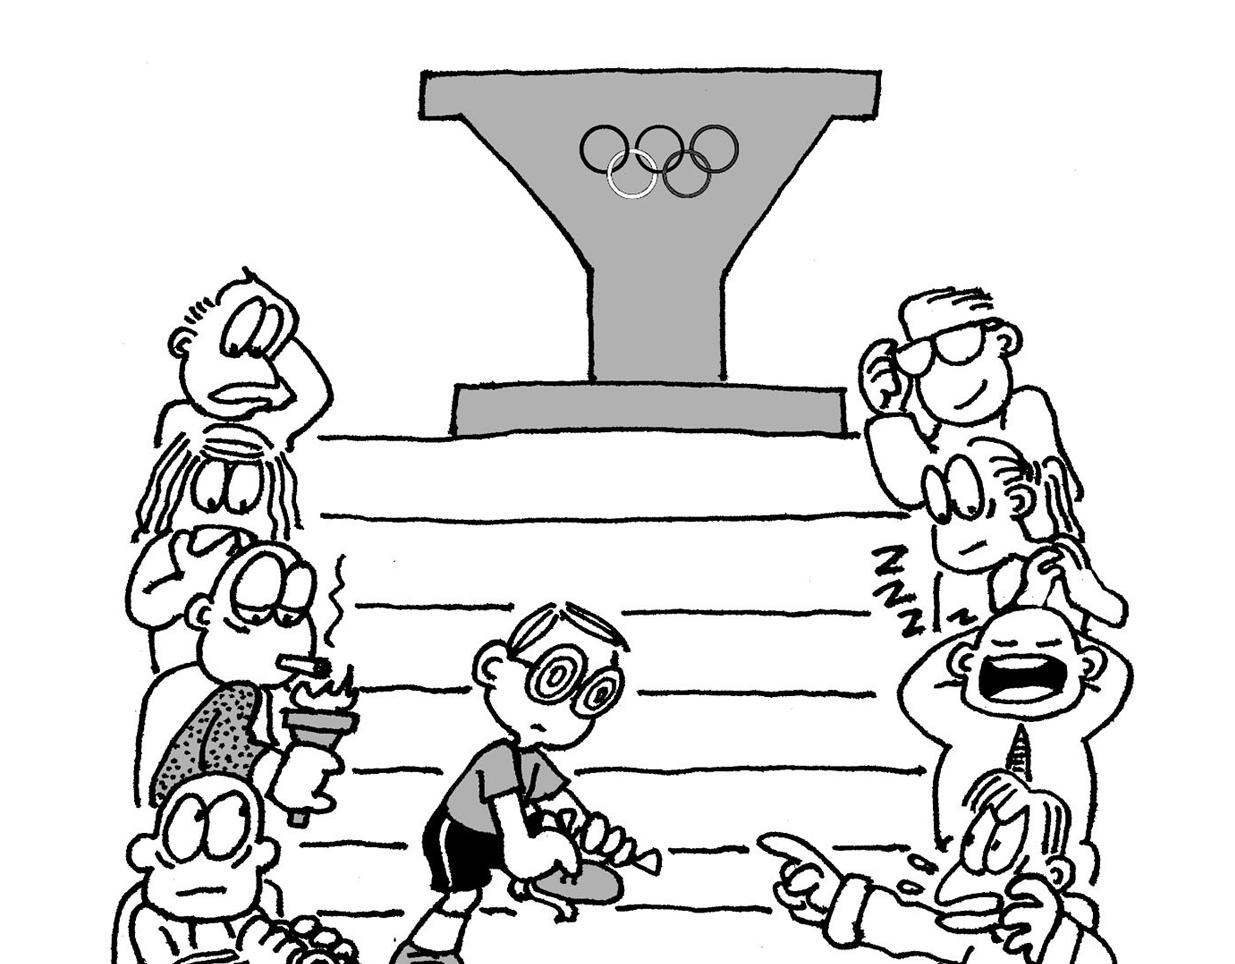 幽默漫畫系列 - 瘋狂奧運 - 5